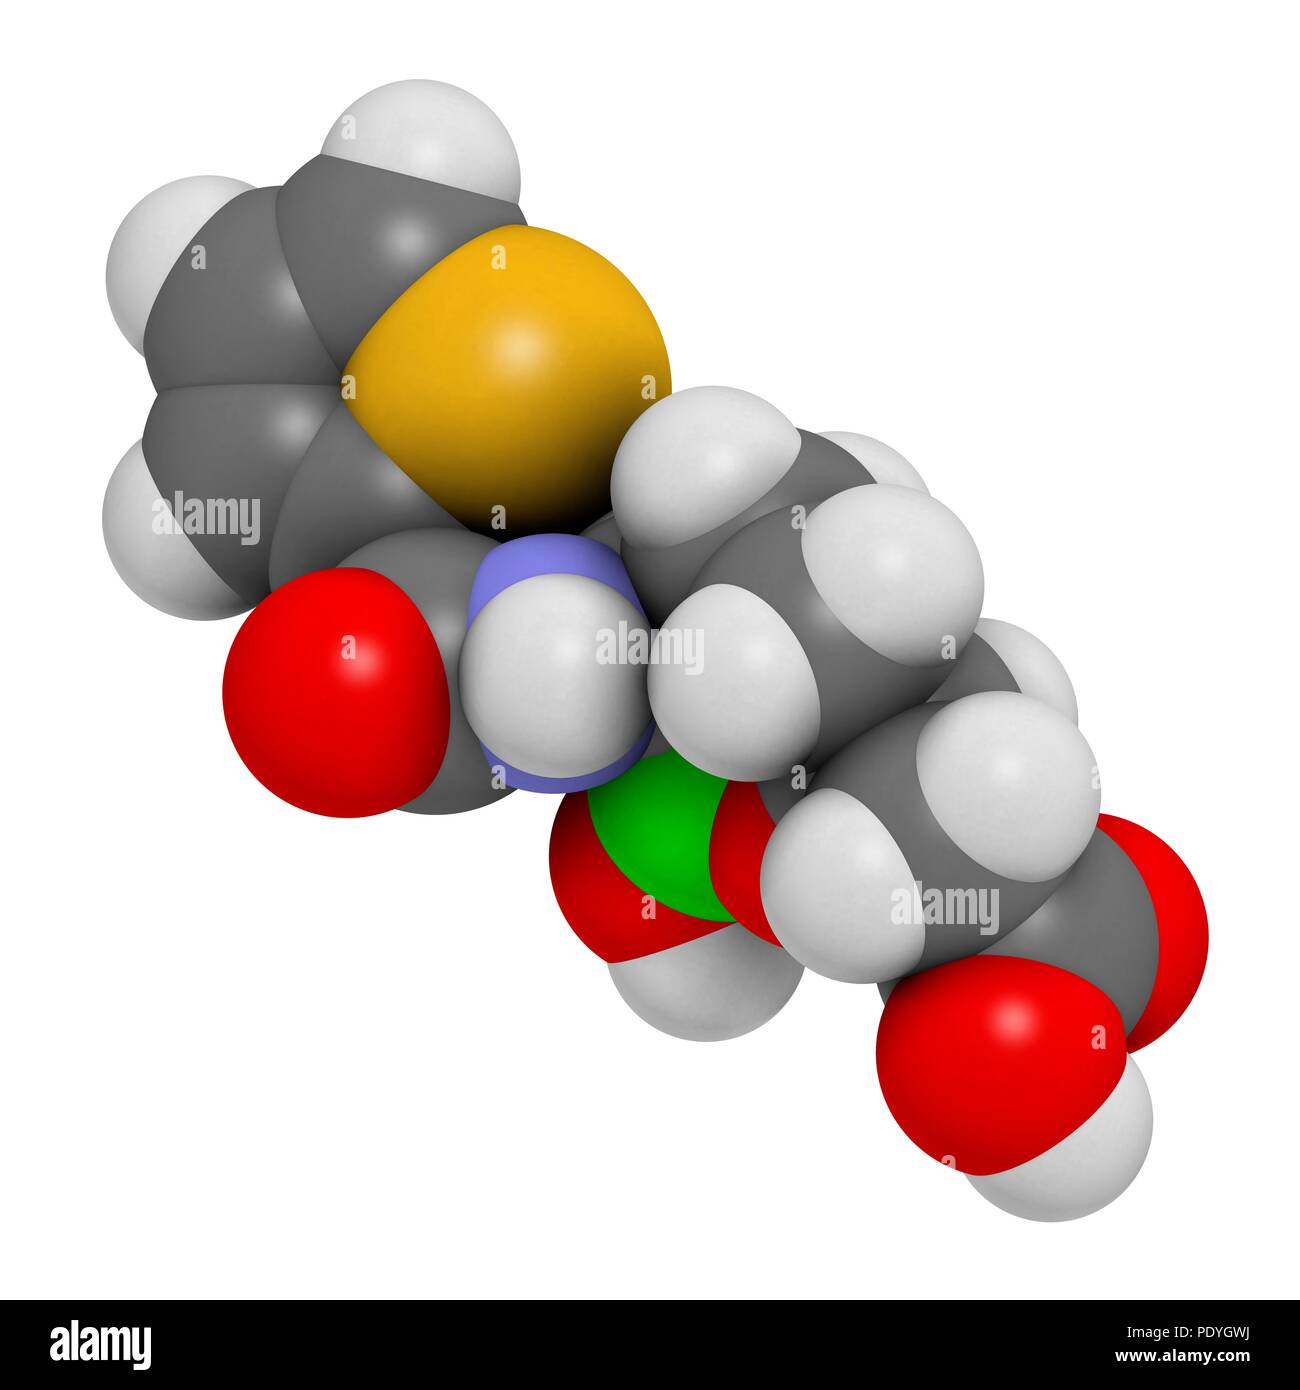 Vaborbactam molécule pharmaceutique. Les bêta-lactamases co-administré avec le méropenem pour bloquer la dégradation de ce dernier par carbapenemase enzymes. Le rendu 3D. Les atomes sont représentés comme des sphères avec le codage couleur classiques : l'hydrogène (blanc), carbone (gris), l'azote (bleu), l'oxygène (rouge), le soufre (jaune), le bore (vert). Banque D'Images